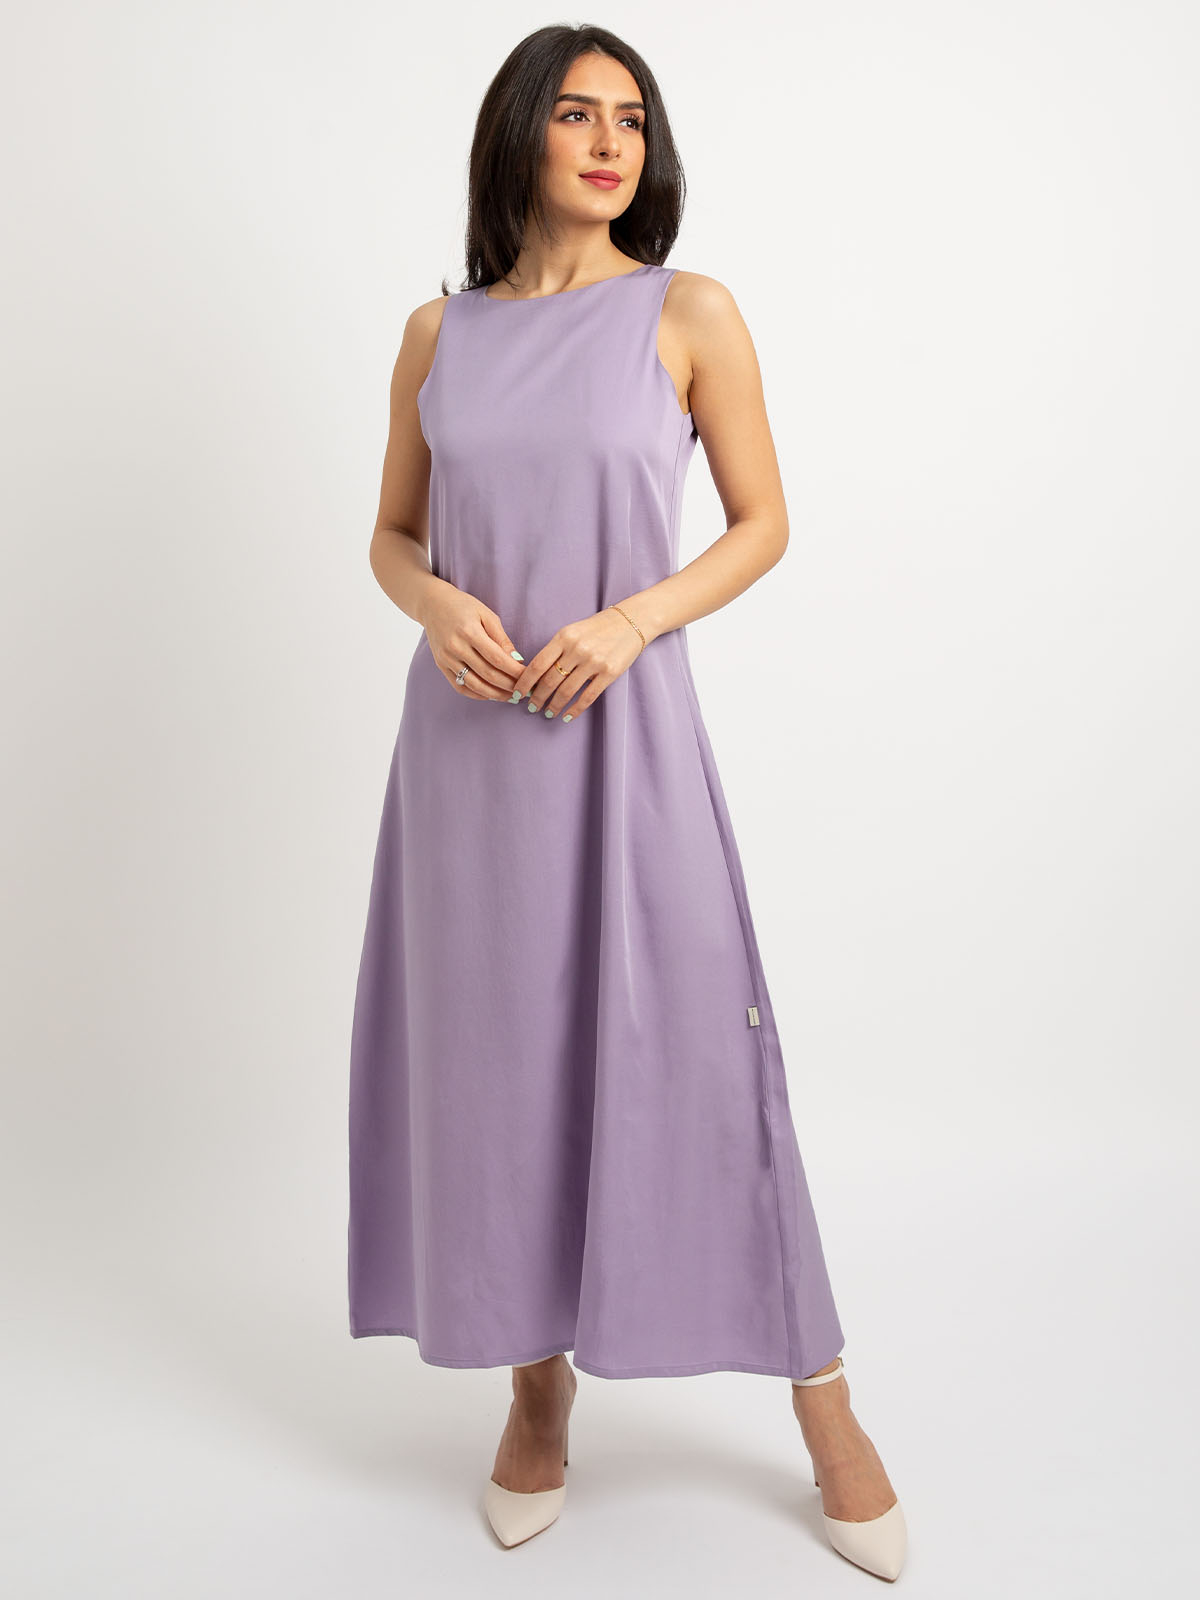 Lavender - Sleeveless Long Dress